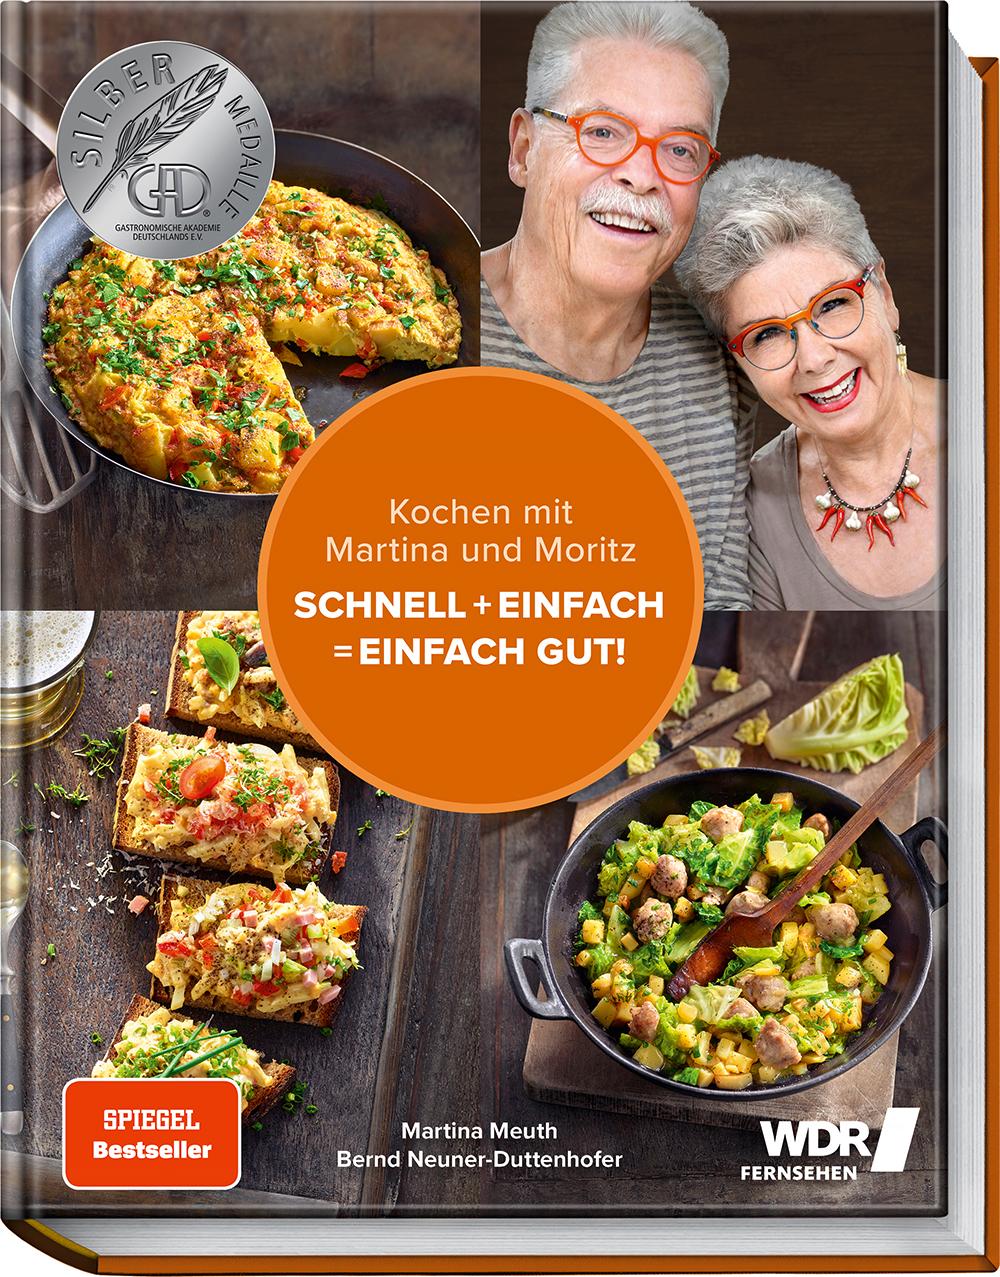 Kochen mit Martina und Moritz – Schnell + einfach = einfach gut! Unsere persönlichen Lieblingsrezepte